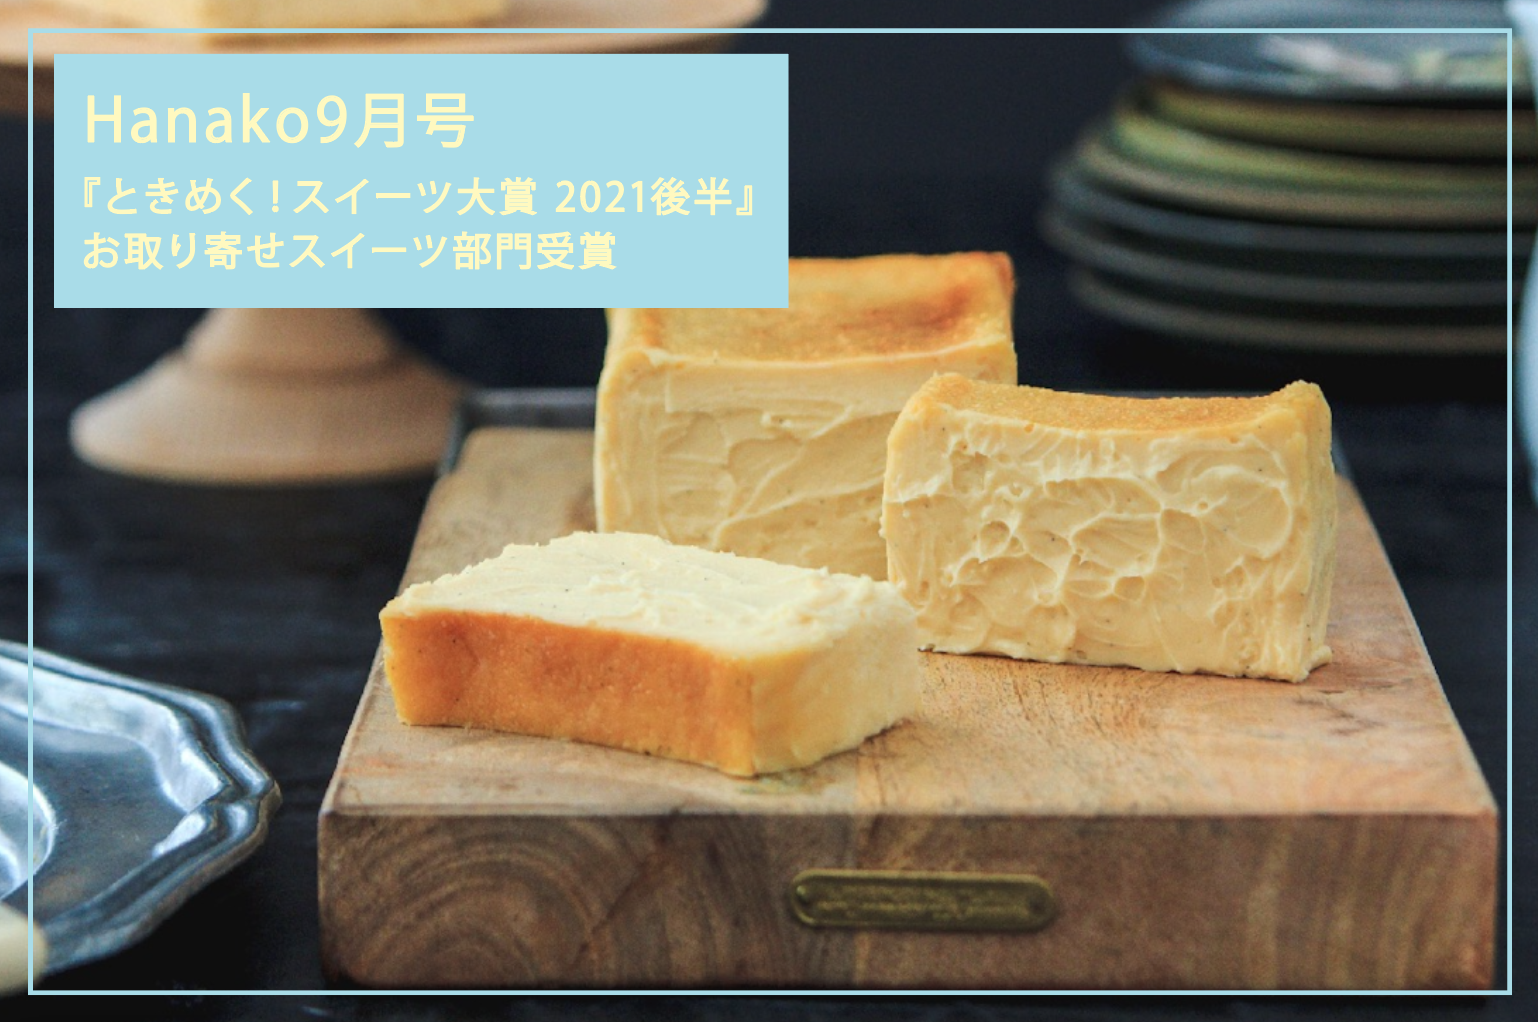 Hanako 9月号「ときめく！スイーツ大賞 2021後半」お取り寄せスイーツ部門でとろ生チーズケーキが受賞しました！